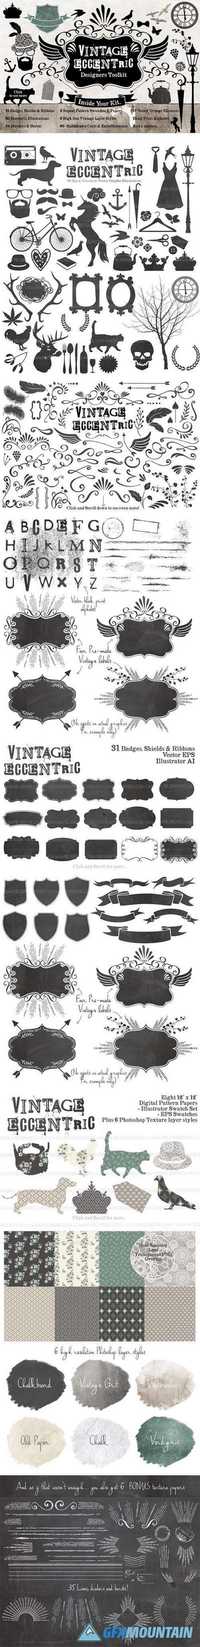  Vintage Eccentric Designers Toolkit 90008